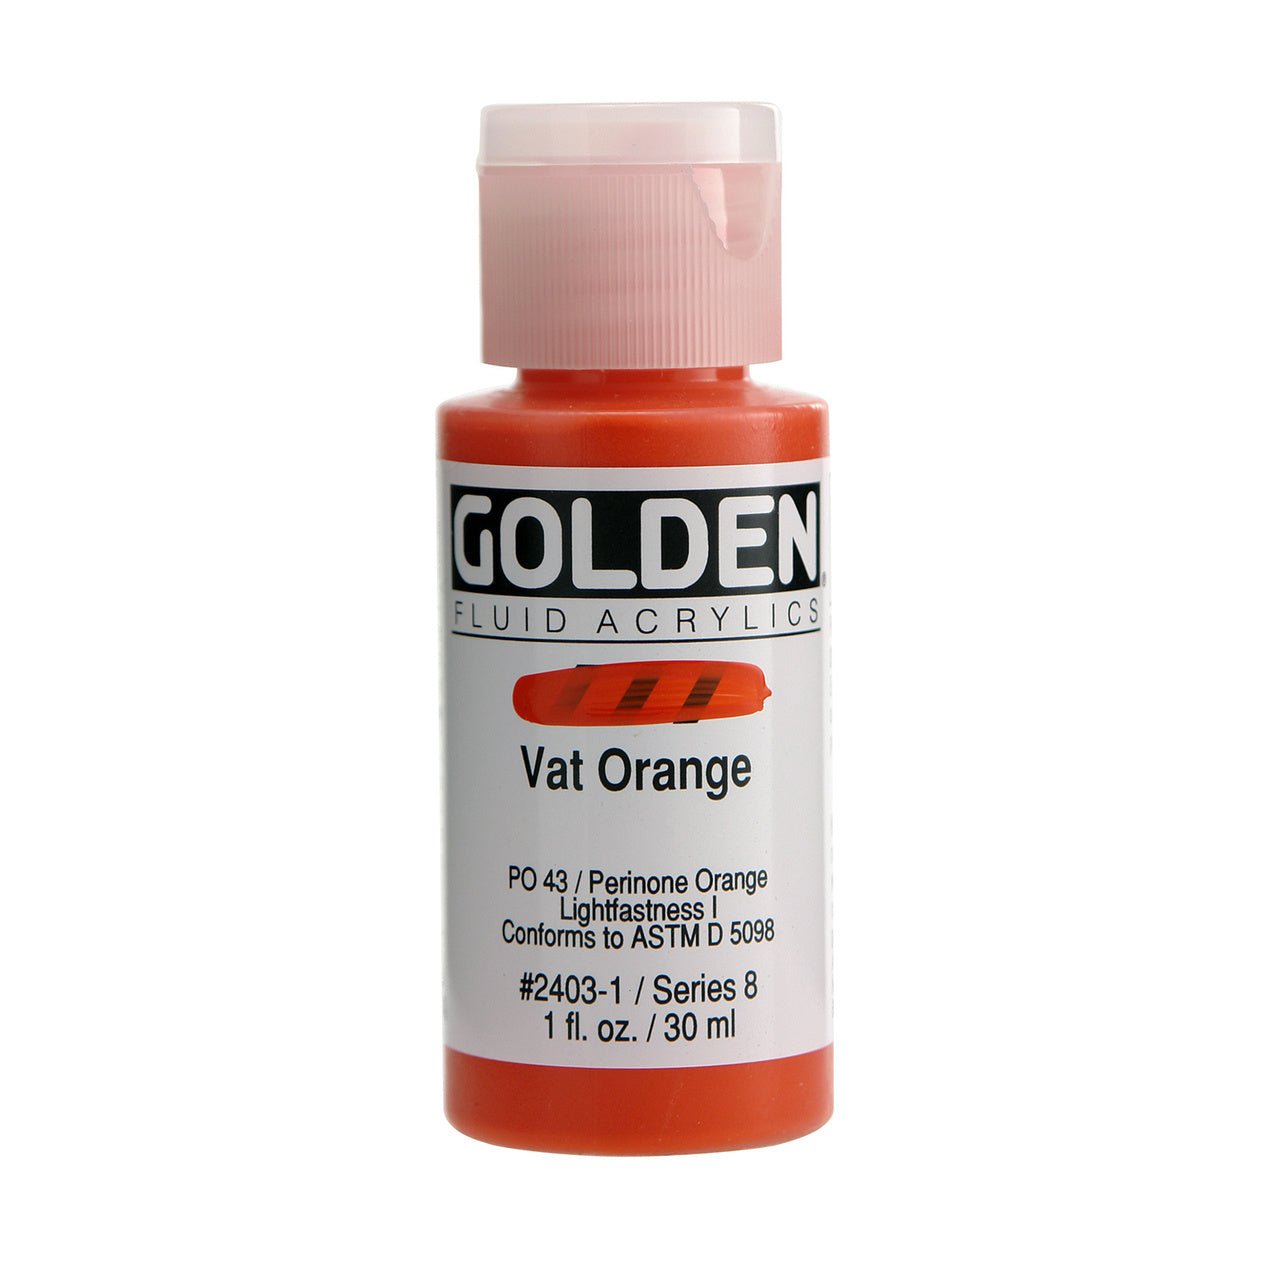 Golden Fluid Acrylic Vat Orange 1 oz - merriartist.com